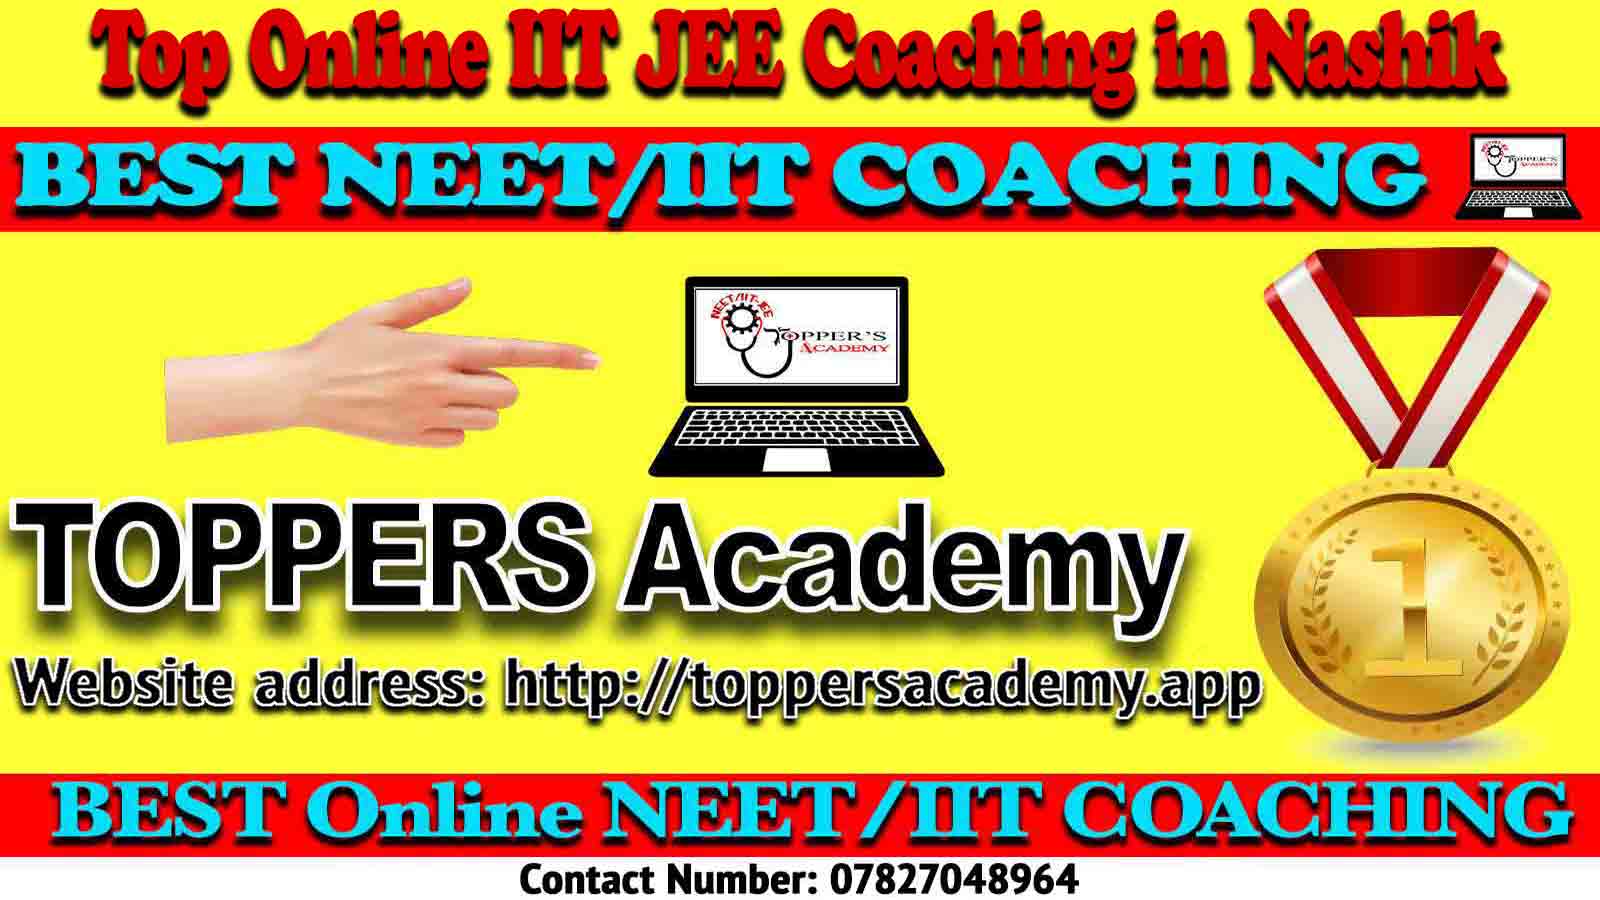 Best Online IIT JEE Coaching in Nashik